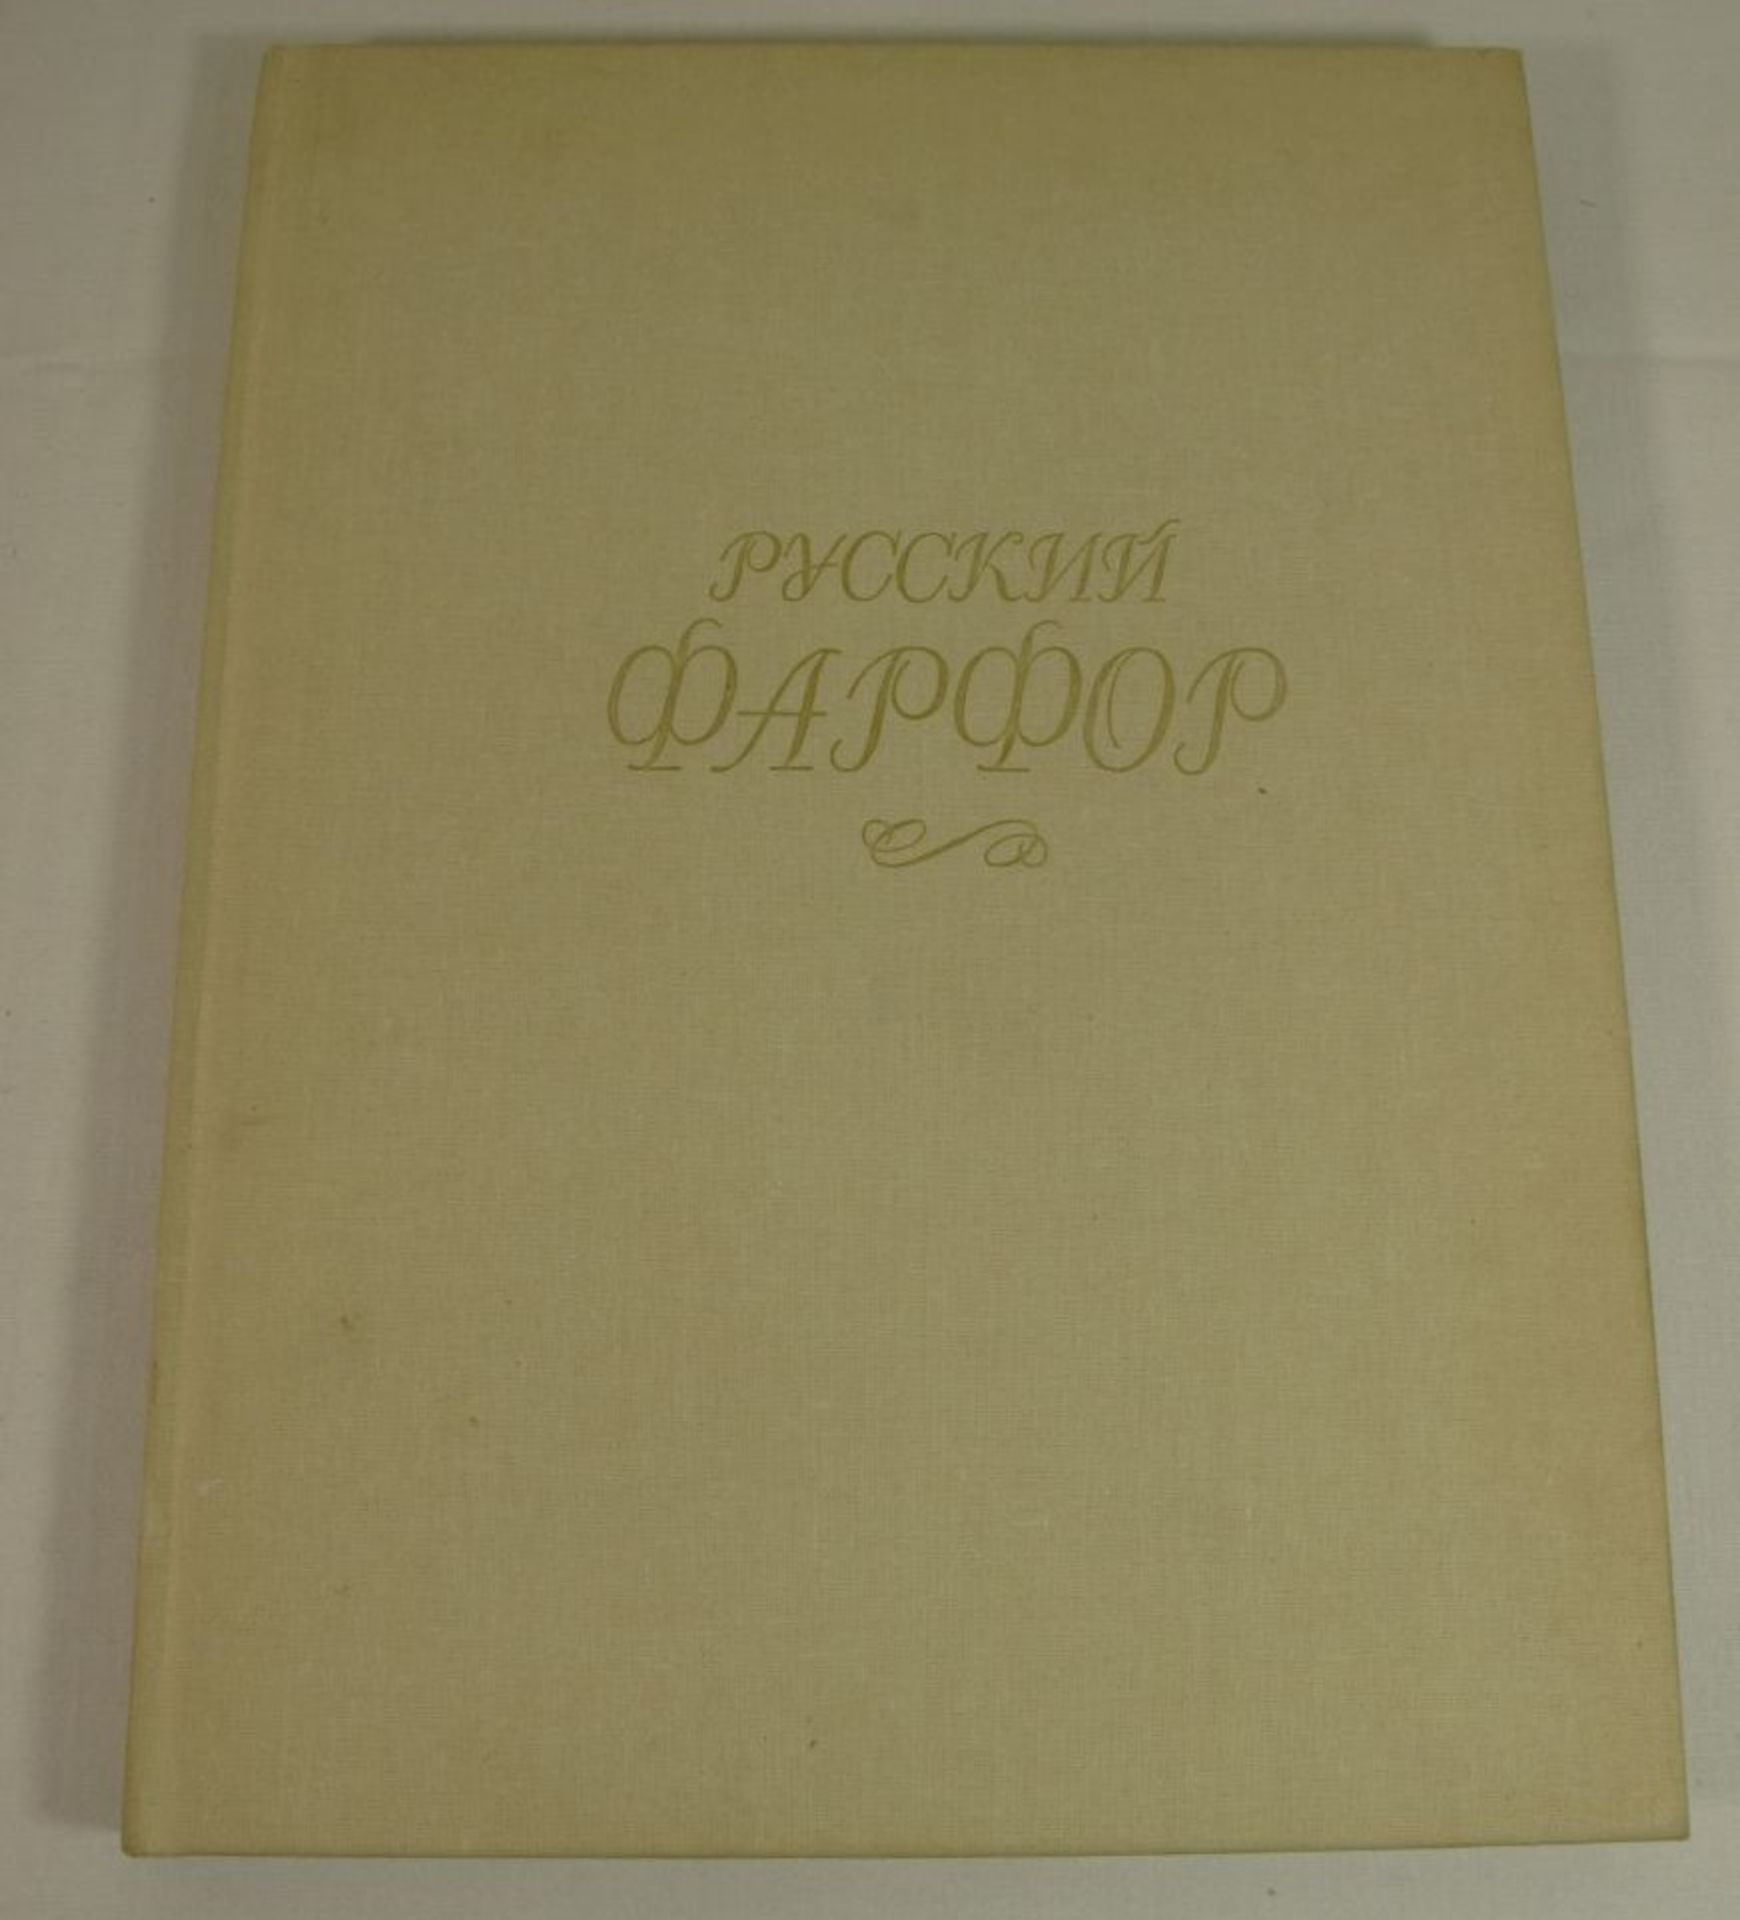 Buch über russisches Porzellan, reich illustriert, in russ. Schrift, Moskau 199